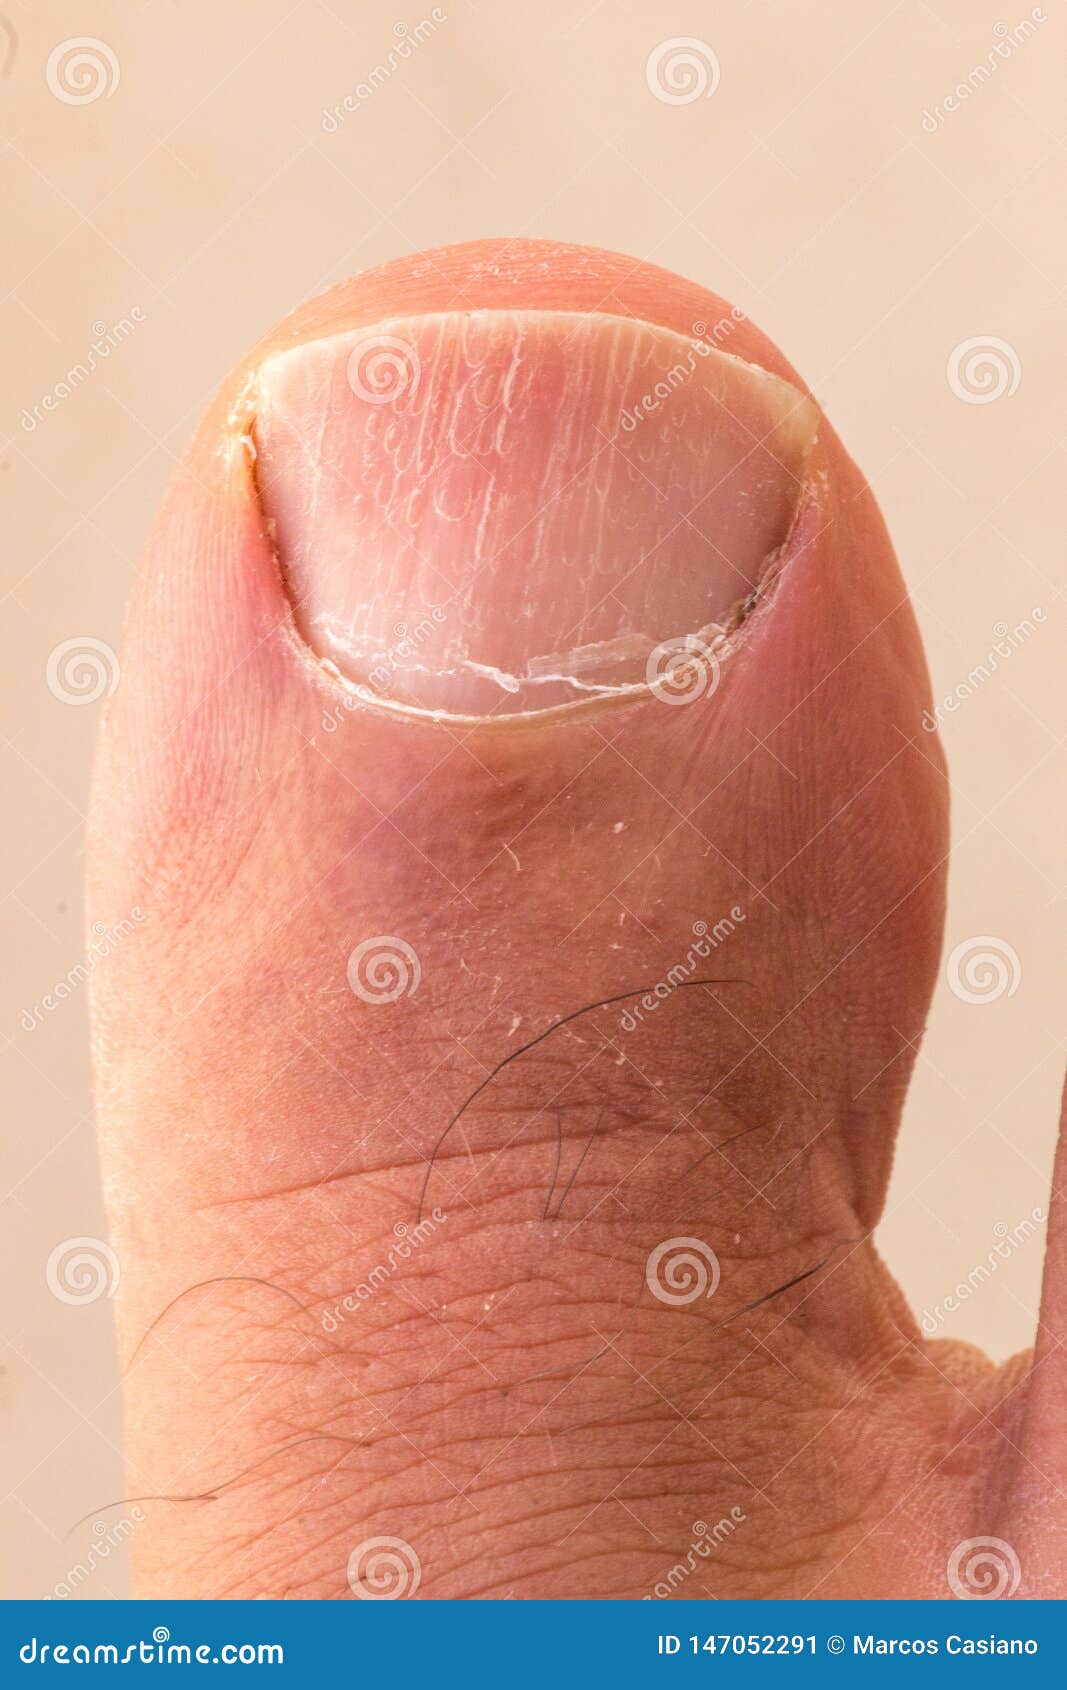 big toe dry skin cracking